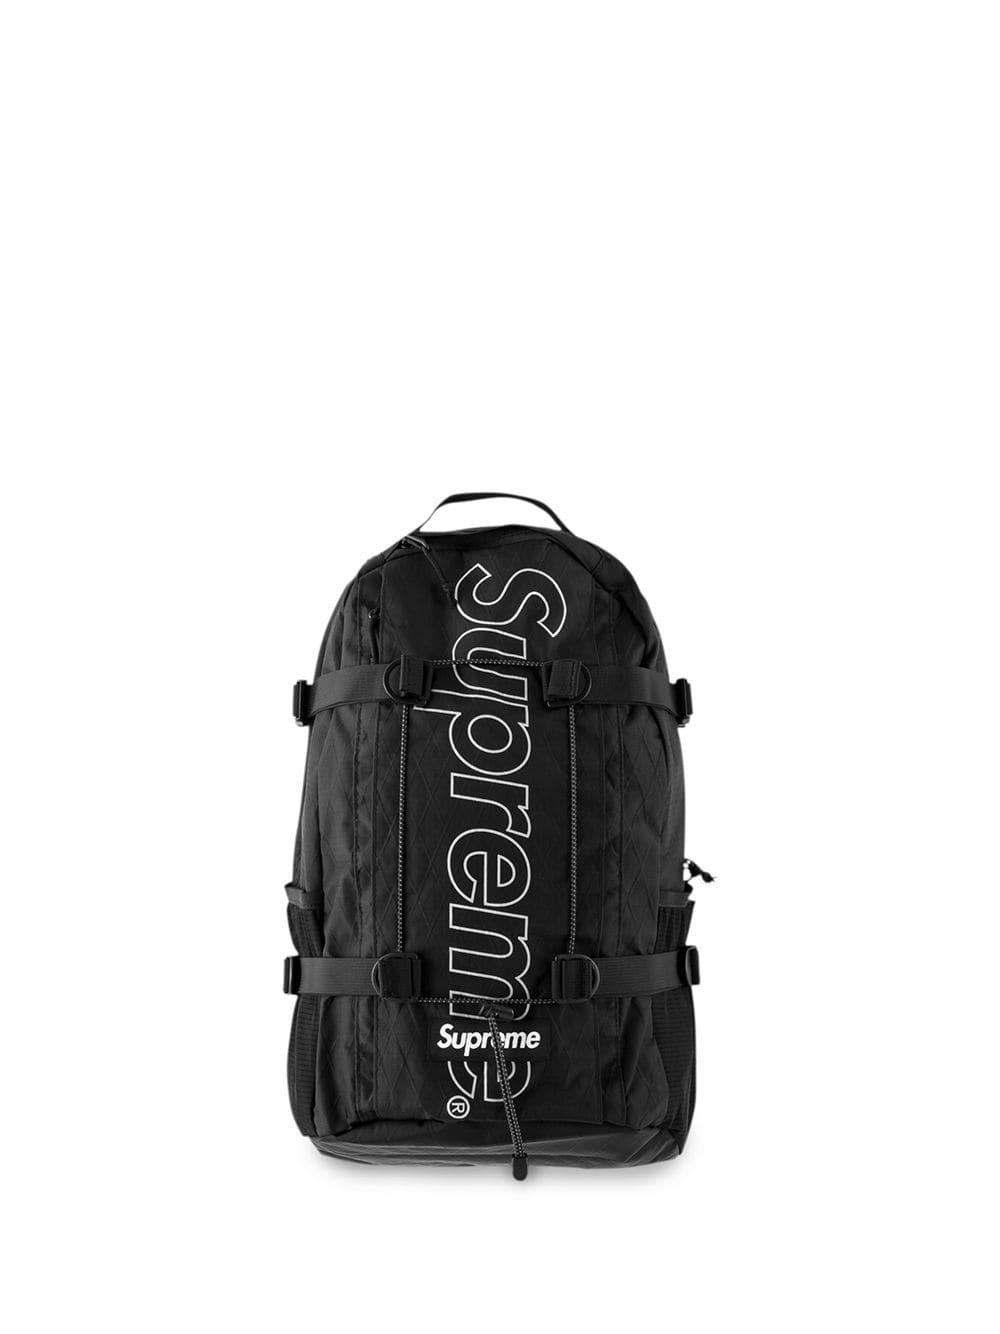 Supreme Logo Backpack in Black for Men - Lyst